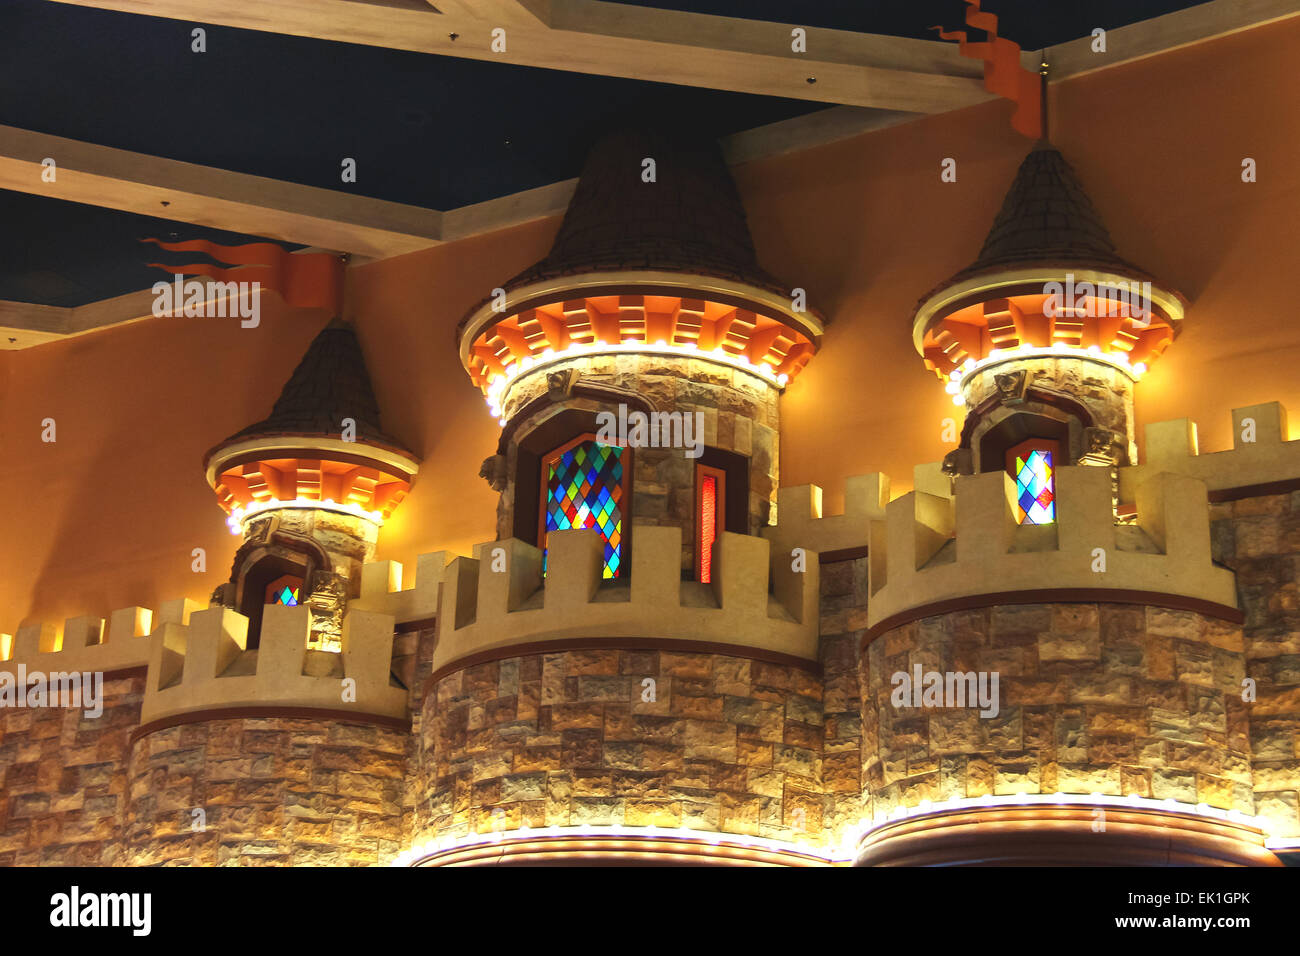 Las Vegas, Nevada, USA - 21. Oktober 2013: Einrichtung der Excalibur Hotel and Casino in Las Vegas. Excalibur wurde 1990 eröffnet und bietet nun seinen Kunden 100.000 qm Casino mit über 1700 Spielautomaten Stockfoto